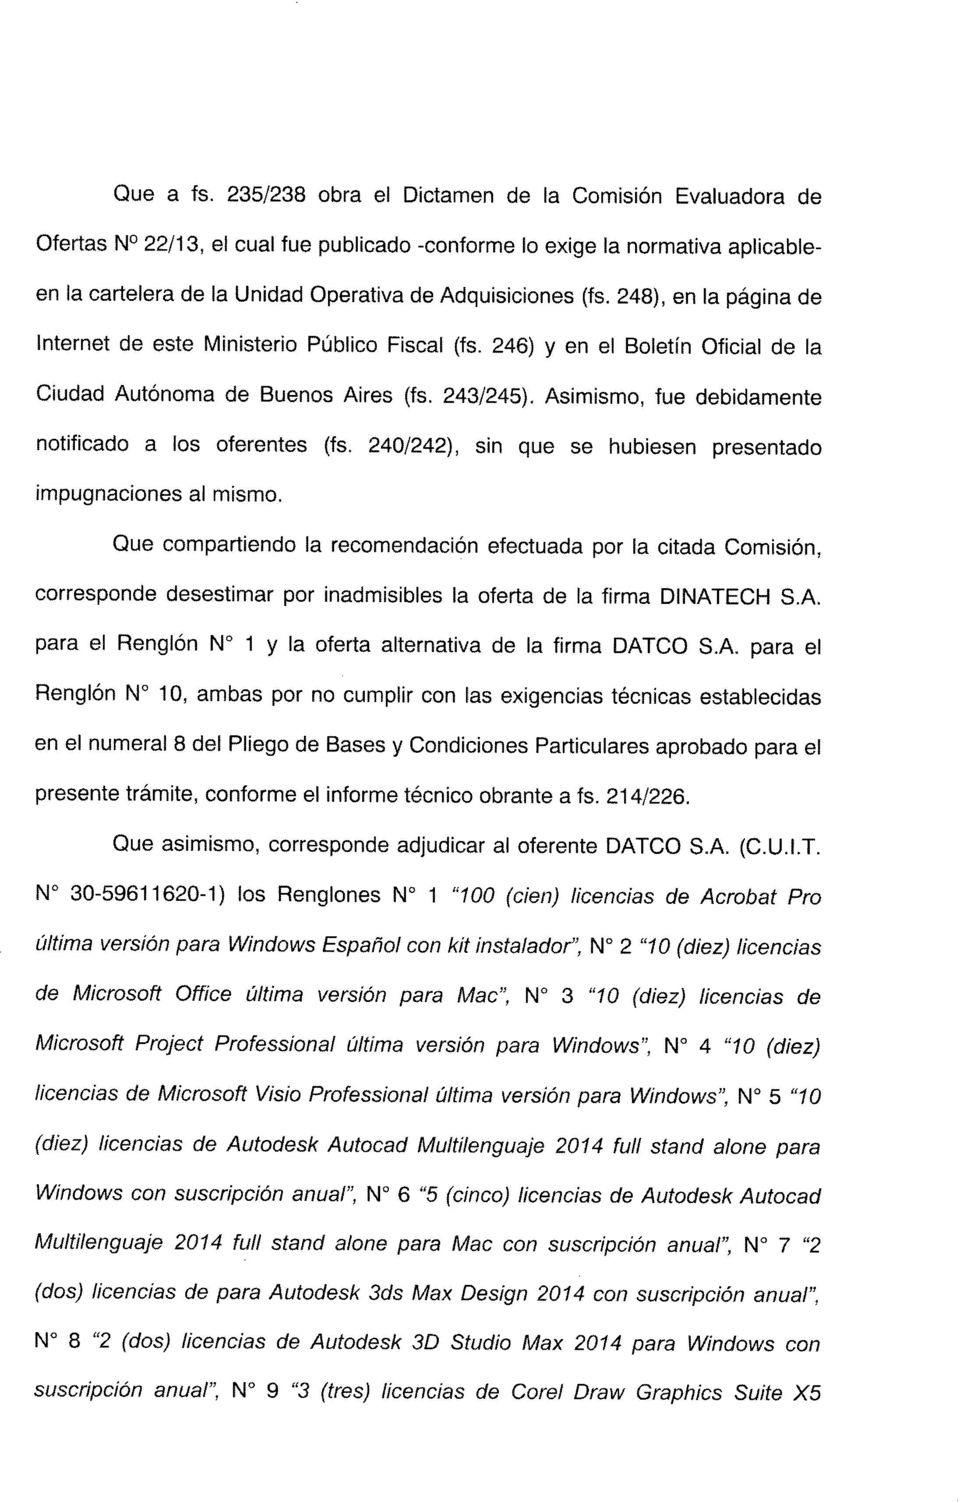 248), en la pagina de Internet de este Ministerio Publico Fiscal (fs. 246) y en el Boletfn Oficial de la Ciudad Aut6noma de Buenos Aires (fs. 243/245).